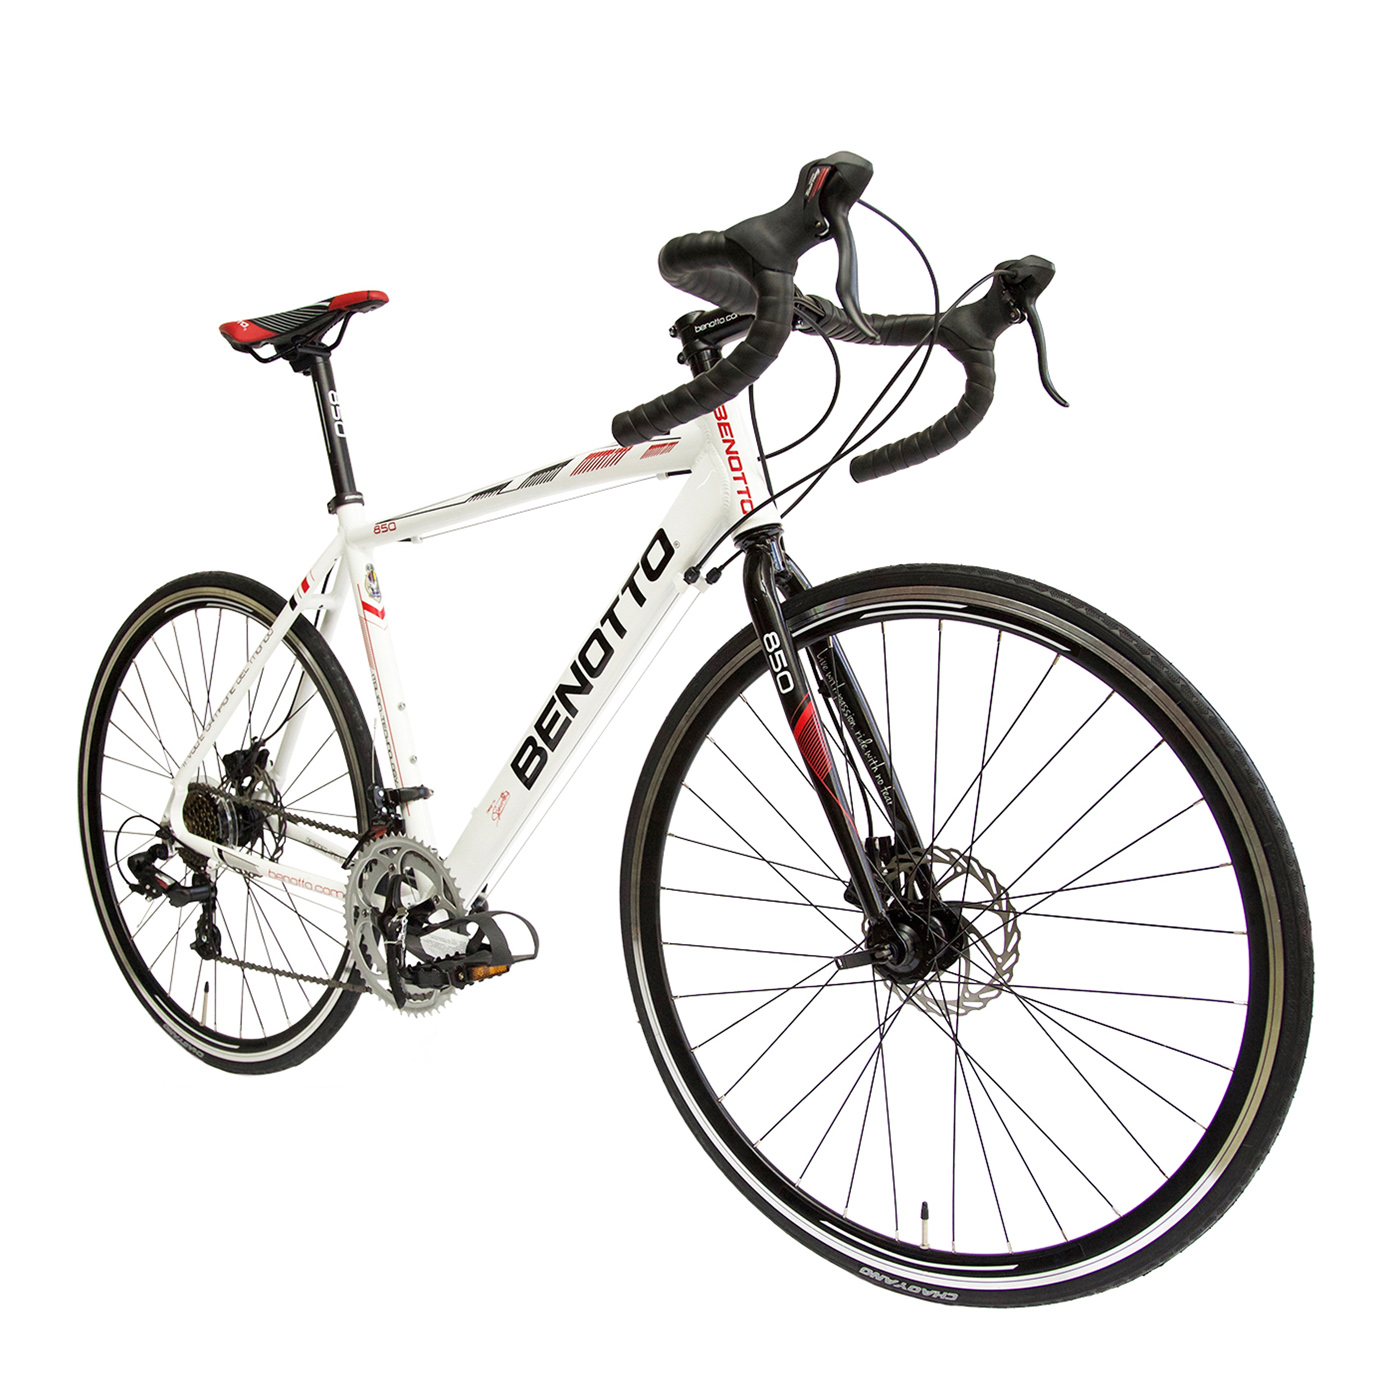 Bicicleta Benotto 850 Ruta Alum R700C 14V Shi Fnos Carrera Blanca 51cm